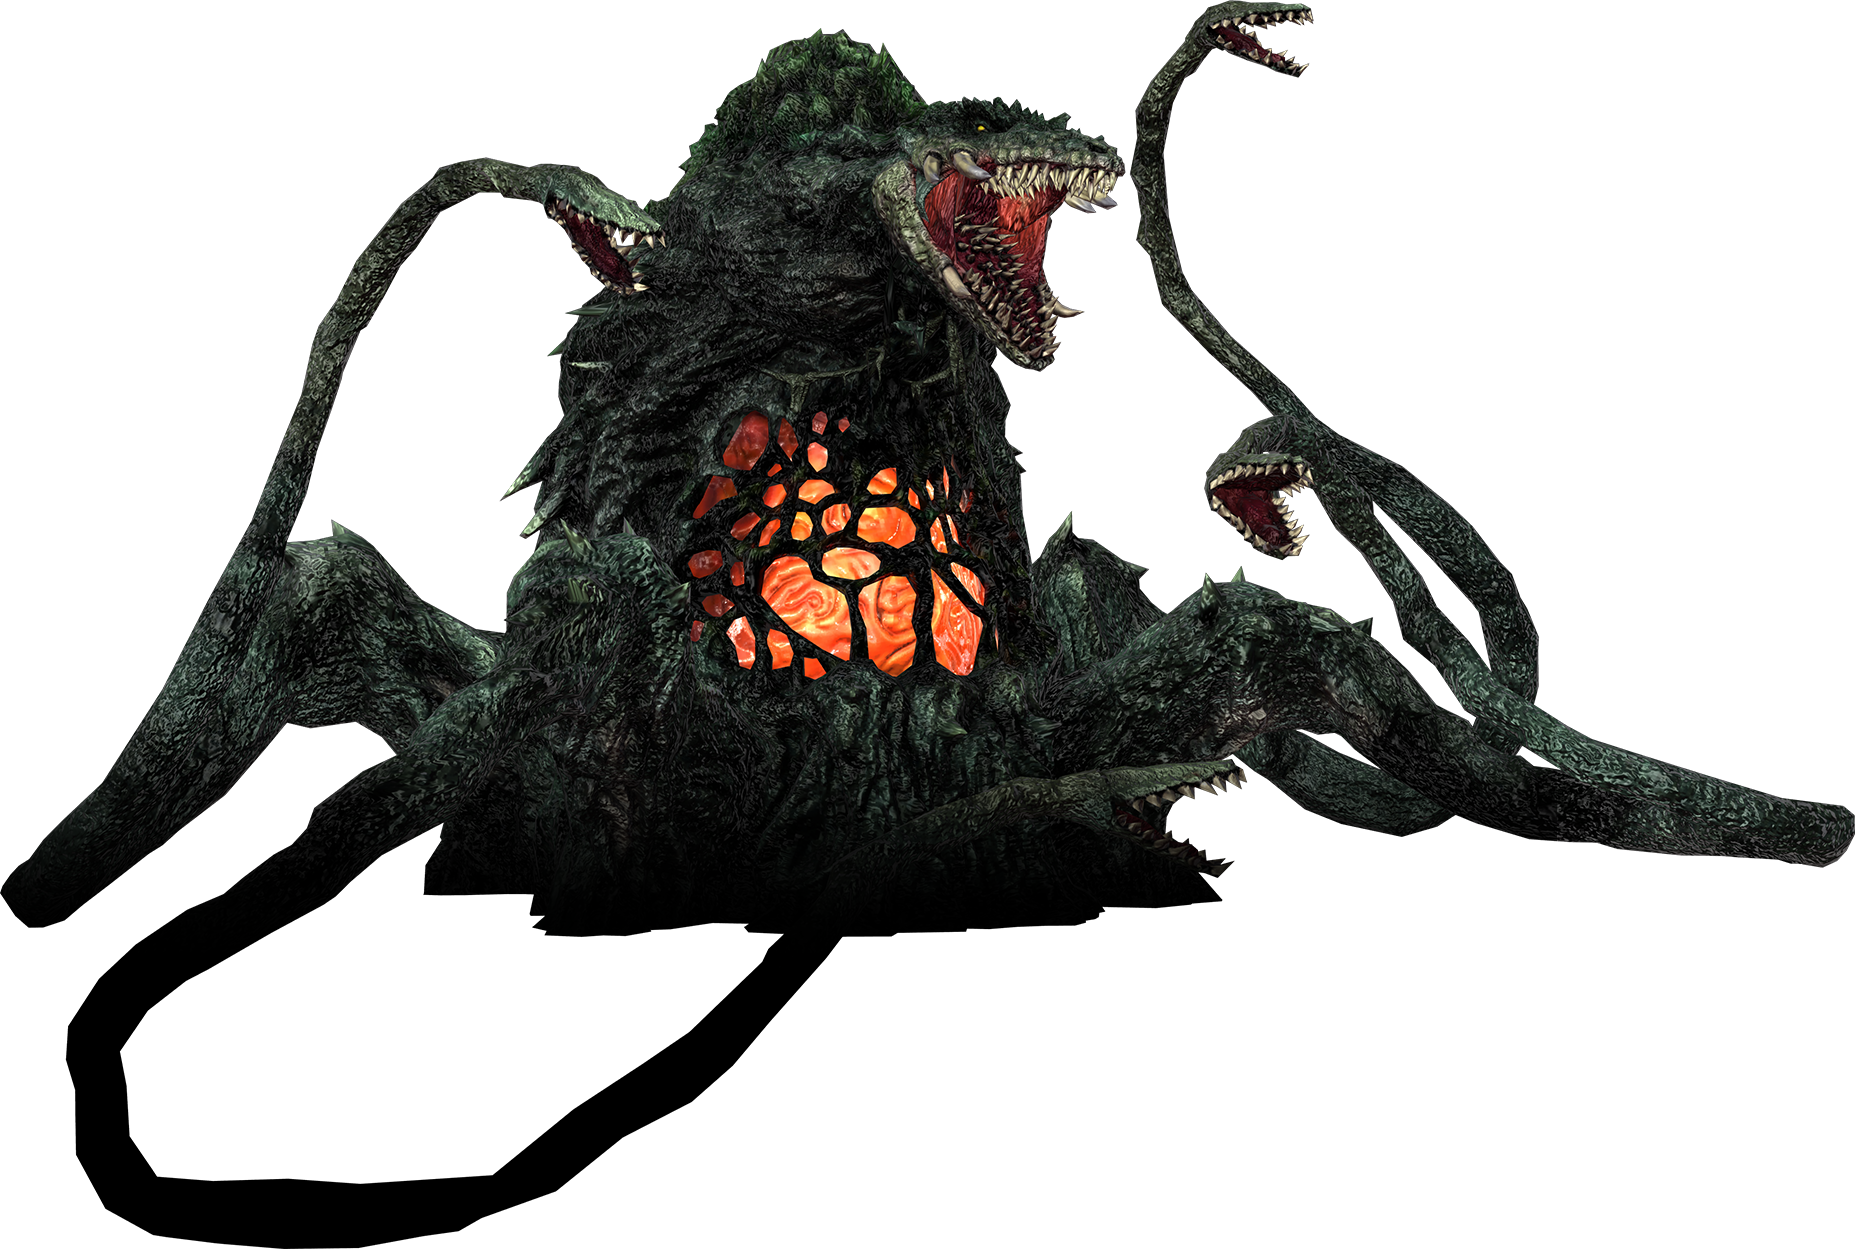 Godzilla The Video Game: Biollante